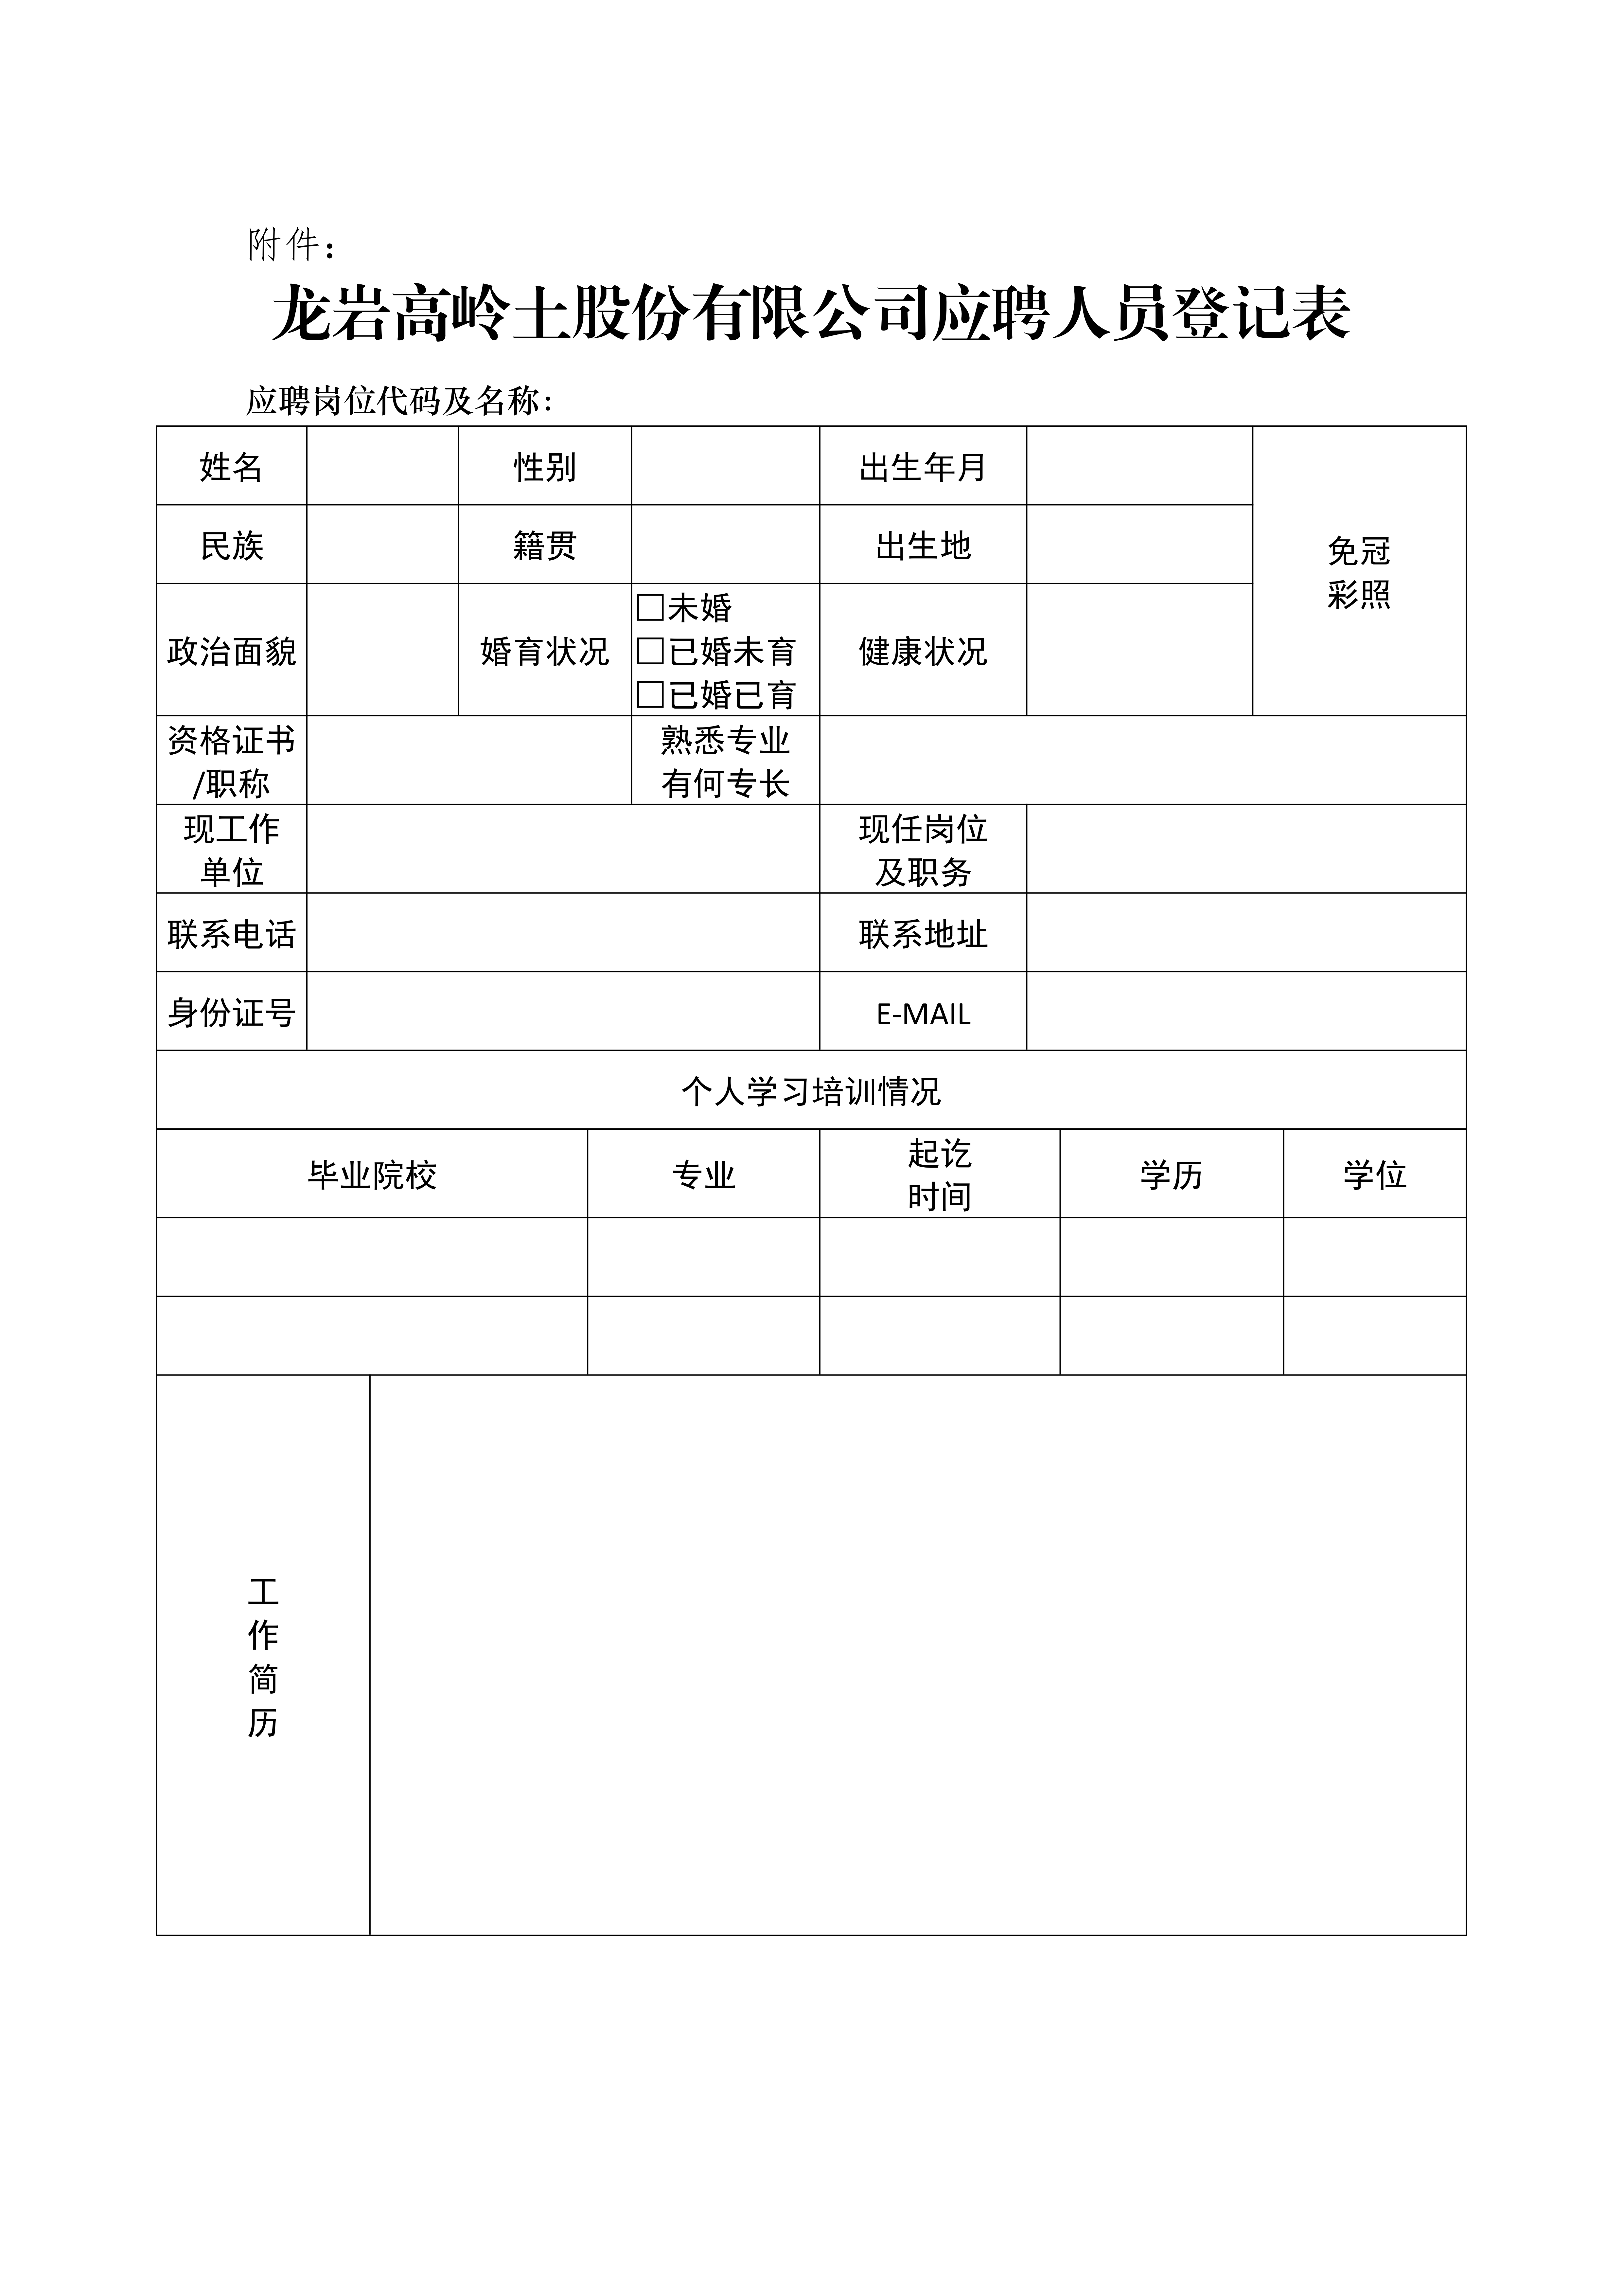 15vip太阳成(集团)有限公司应聘人员登记表_00.png